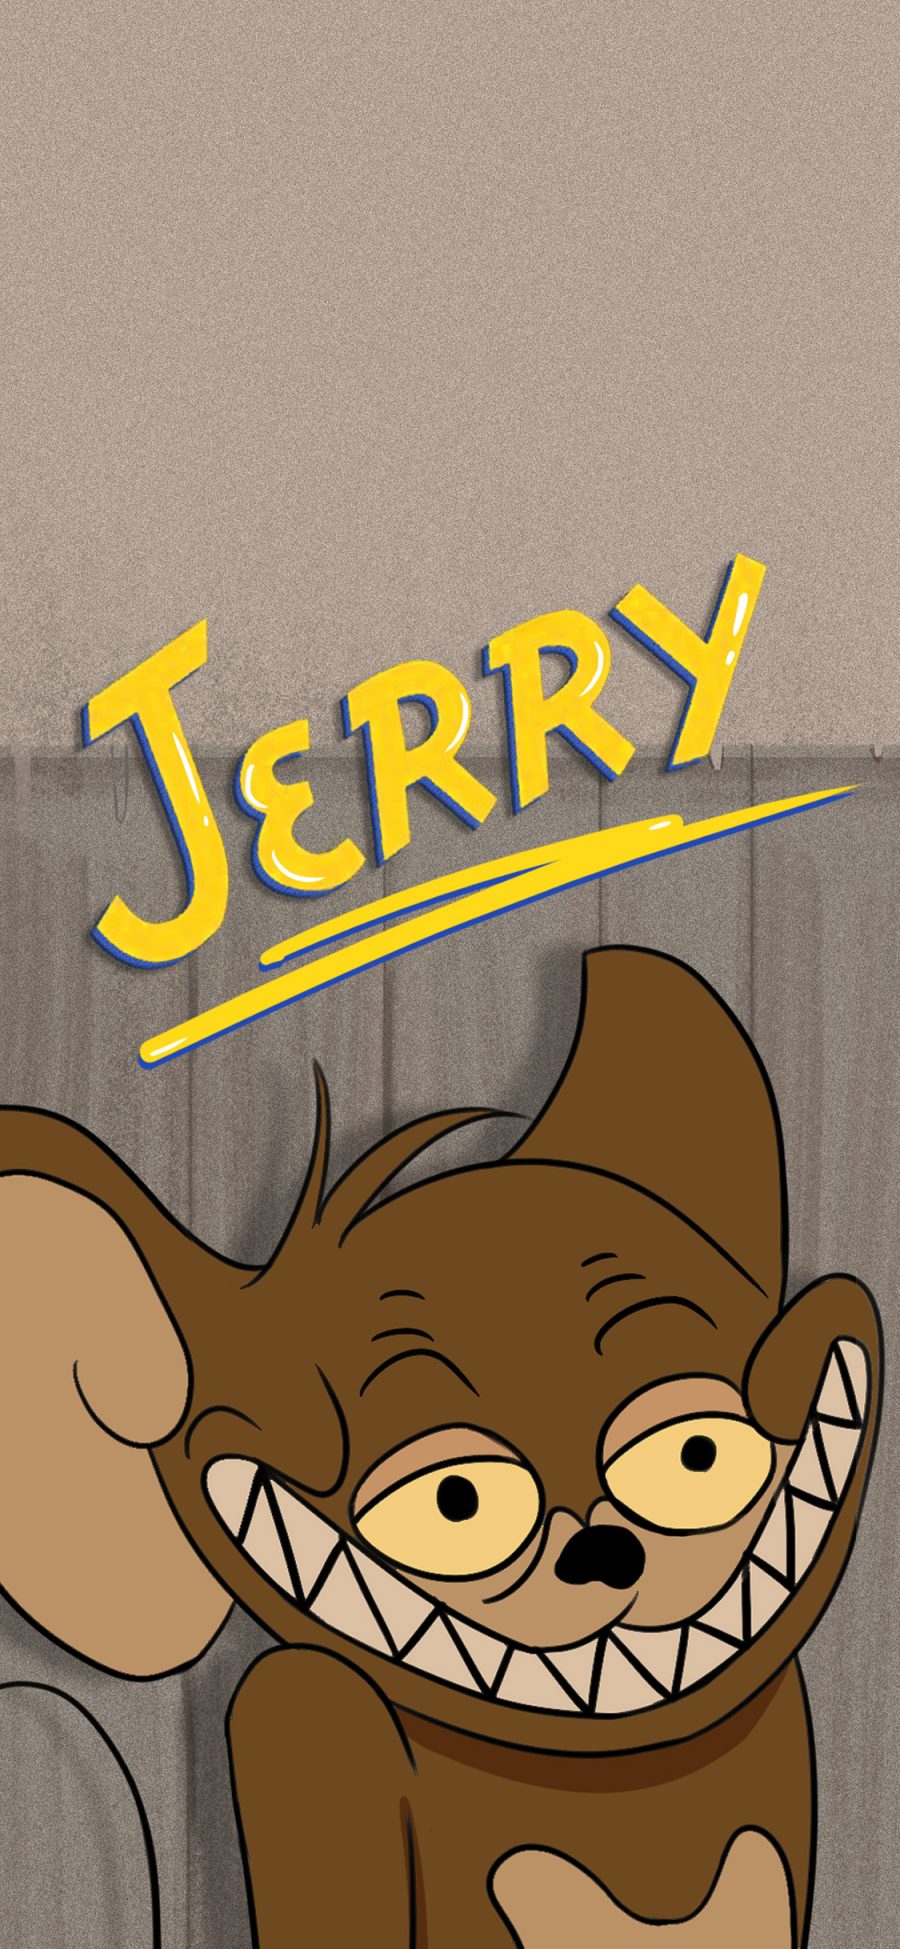 [2436×1125]动画 猫和老鼠 Jerry 杰瑞鼠 苹果手机动漫壁纸图片